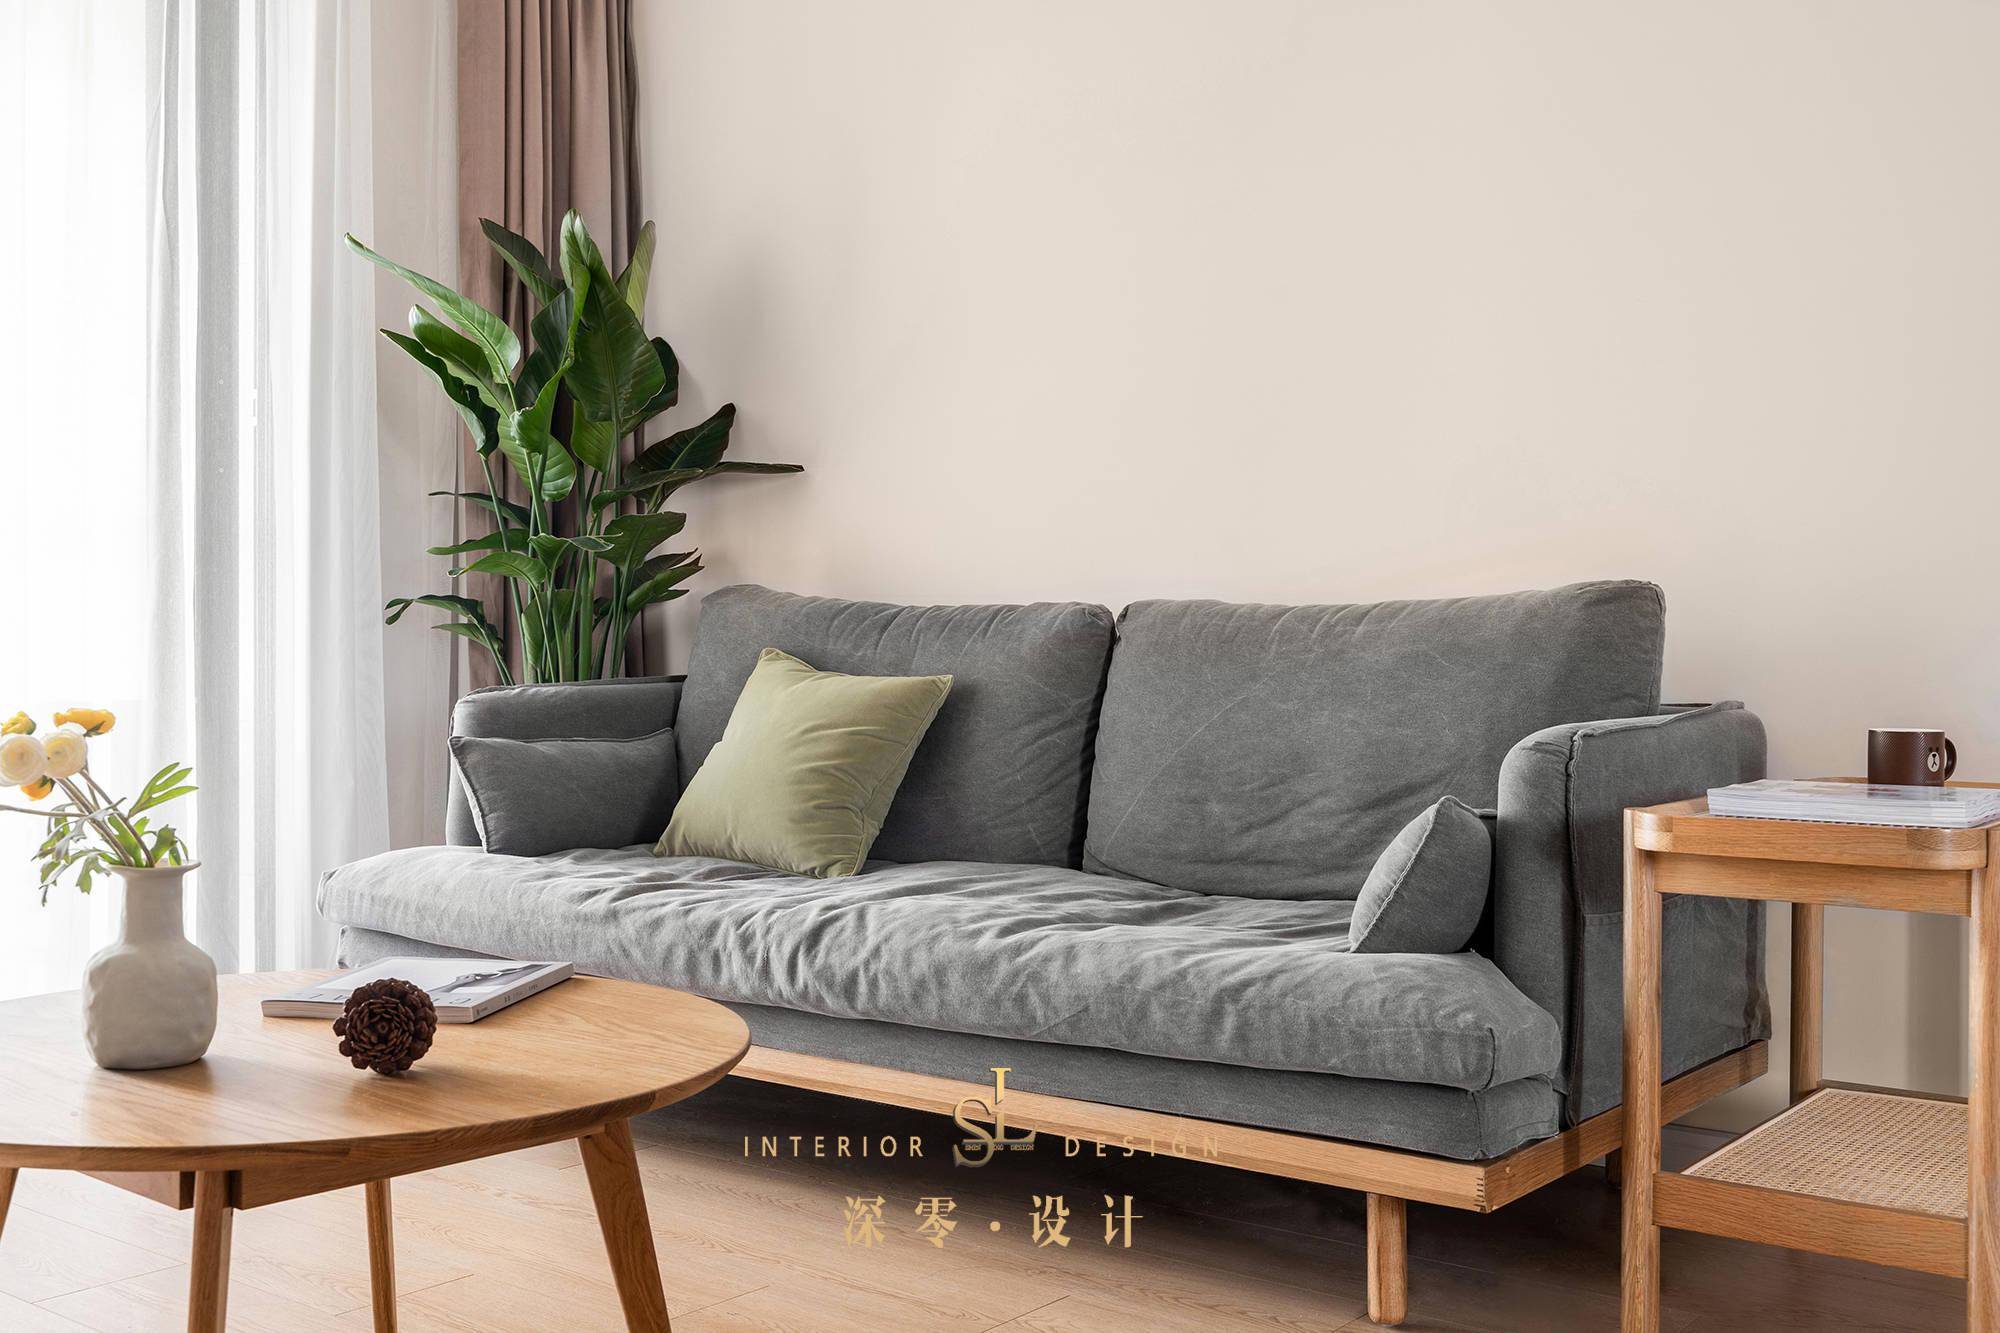 沙发背景墙选择了与原木近似的色彩(立邦:nn0137